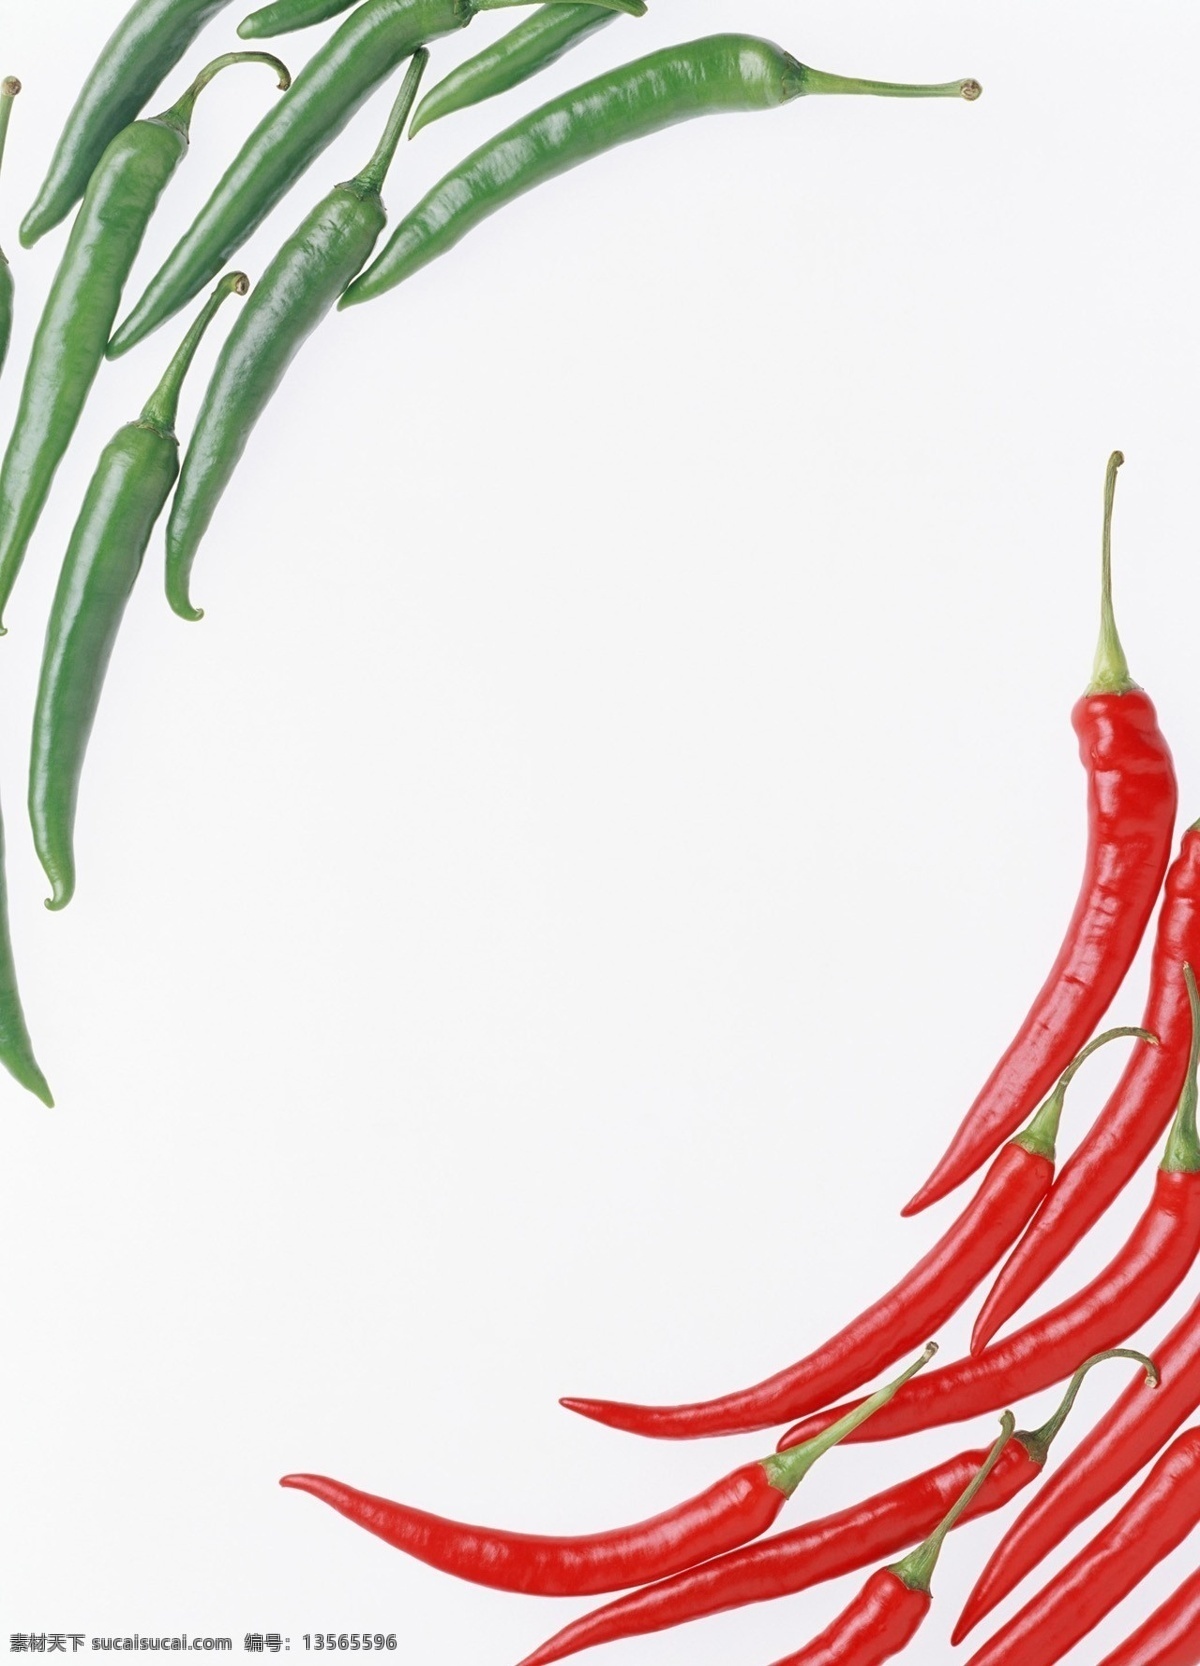 辣椒 食物 食物原料 果实 植物 蔬菜 红辣椒 青辣椒 红色 绿色 餐饮美食 食物素材 摄影图库